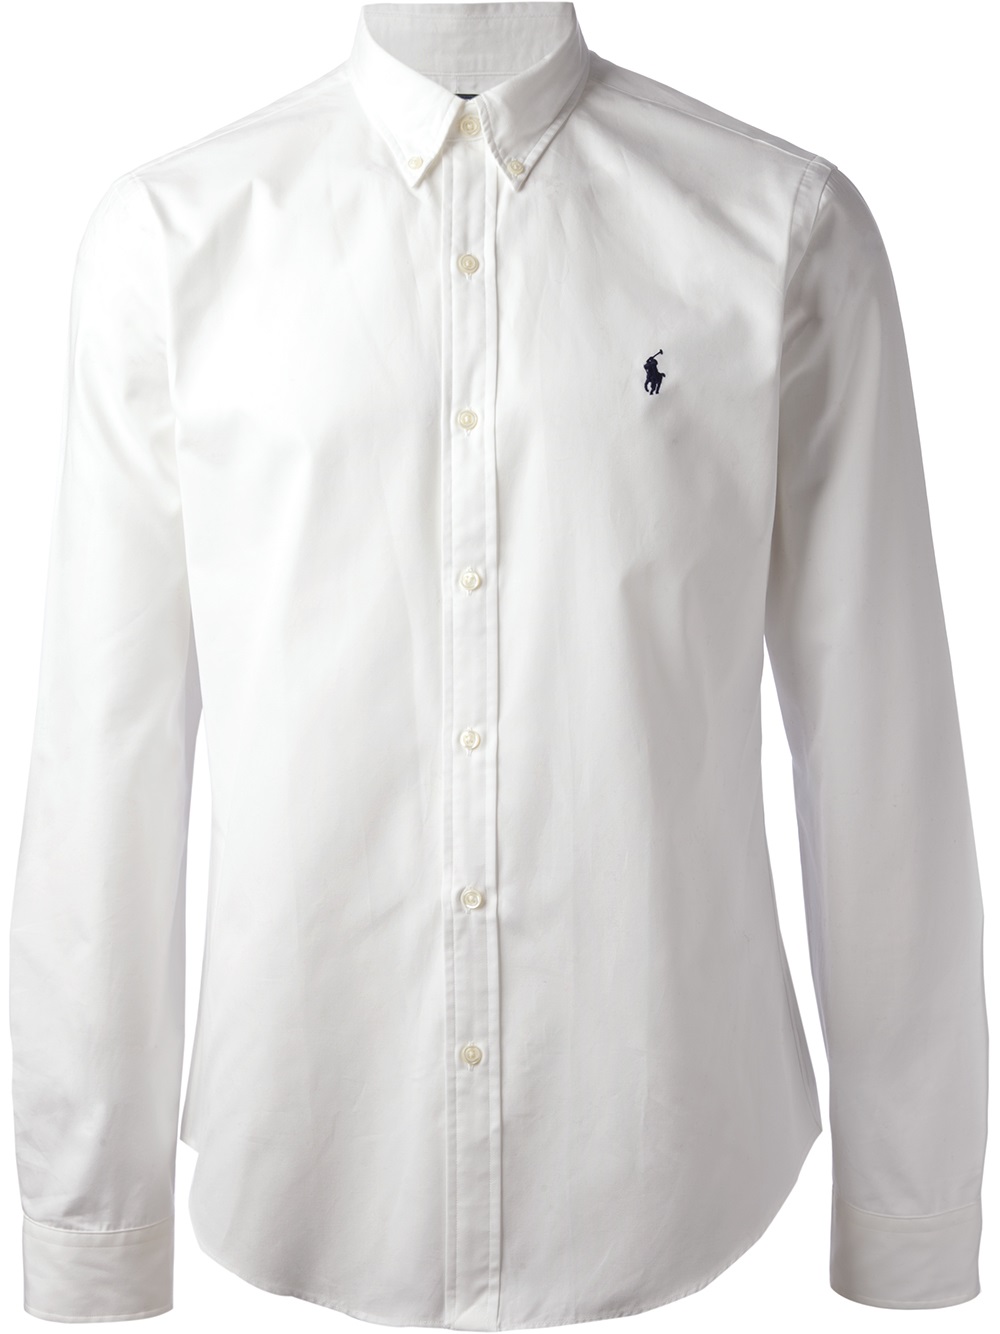 Polo Ralph Lauren Long Sleeve Shirt in White for Men - Lyst